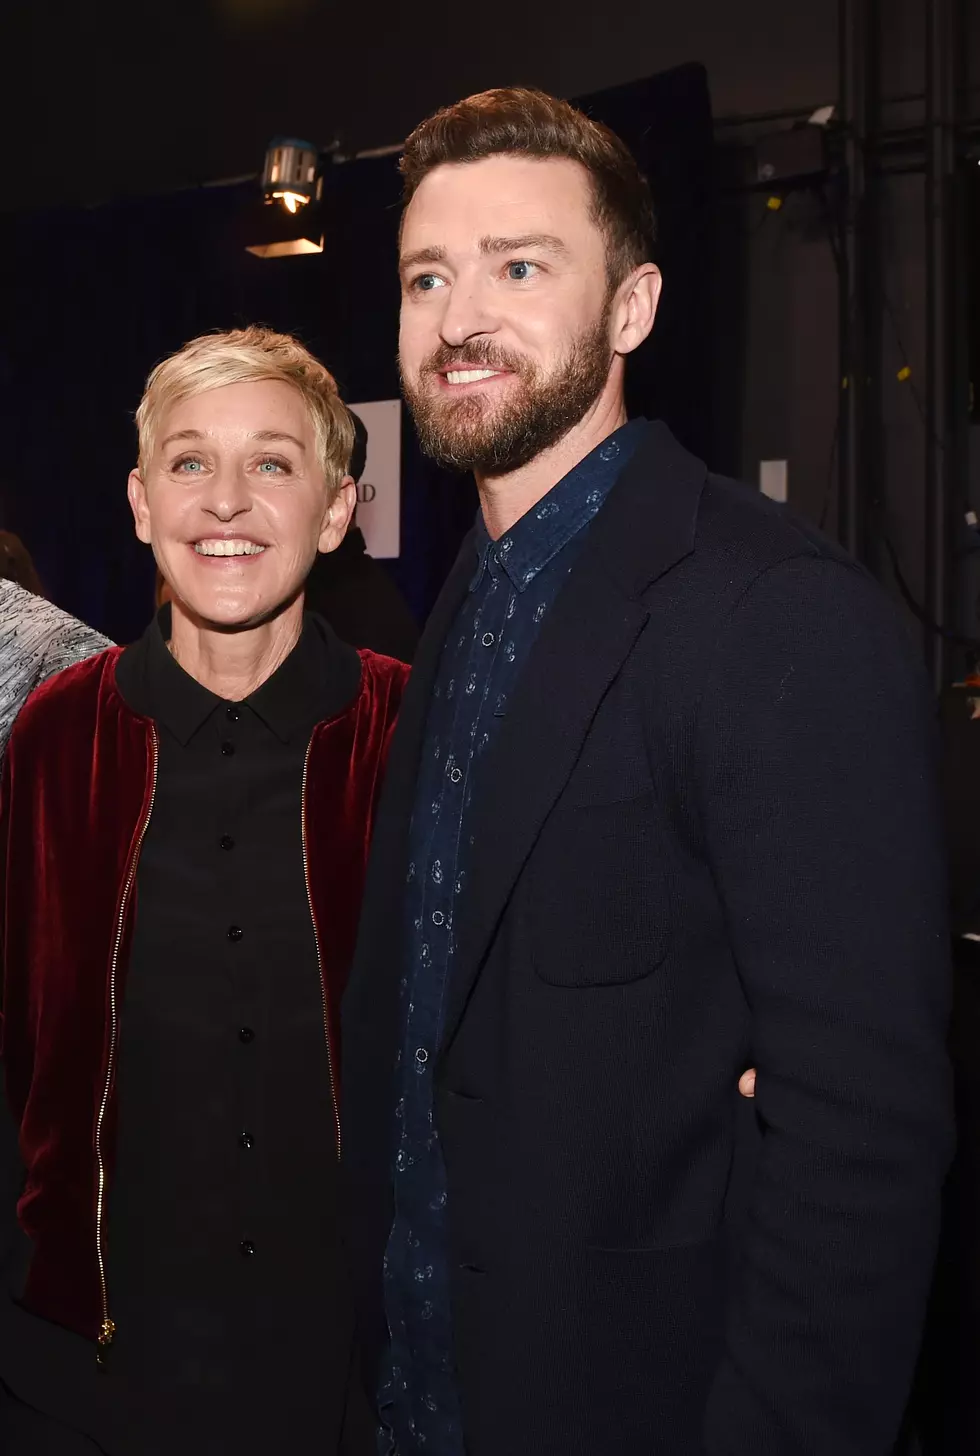 Ellen Asks Justin Timberlake for Secret Signal During Super Bowl Performance [Video]